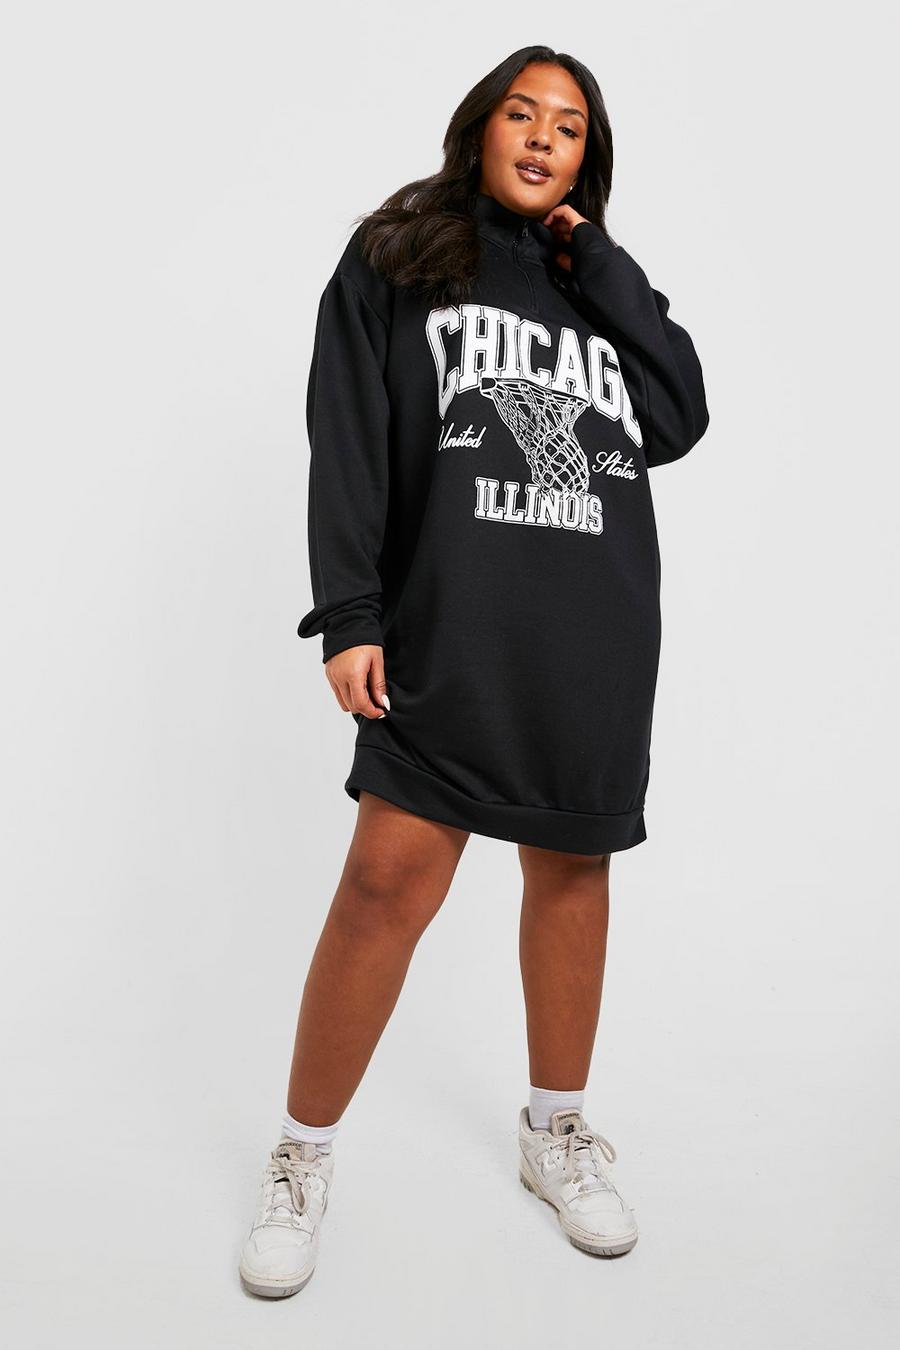 Grande taille - Robe sweat à slogan Chicago, Black